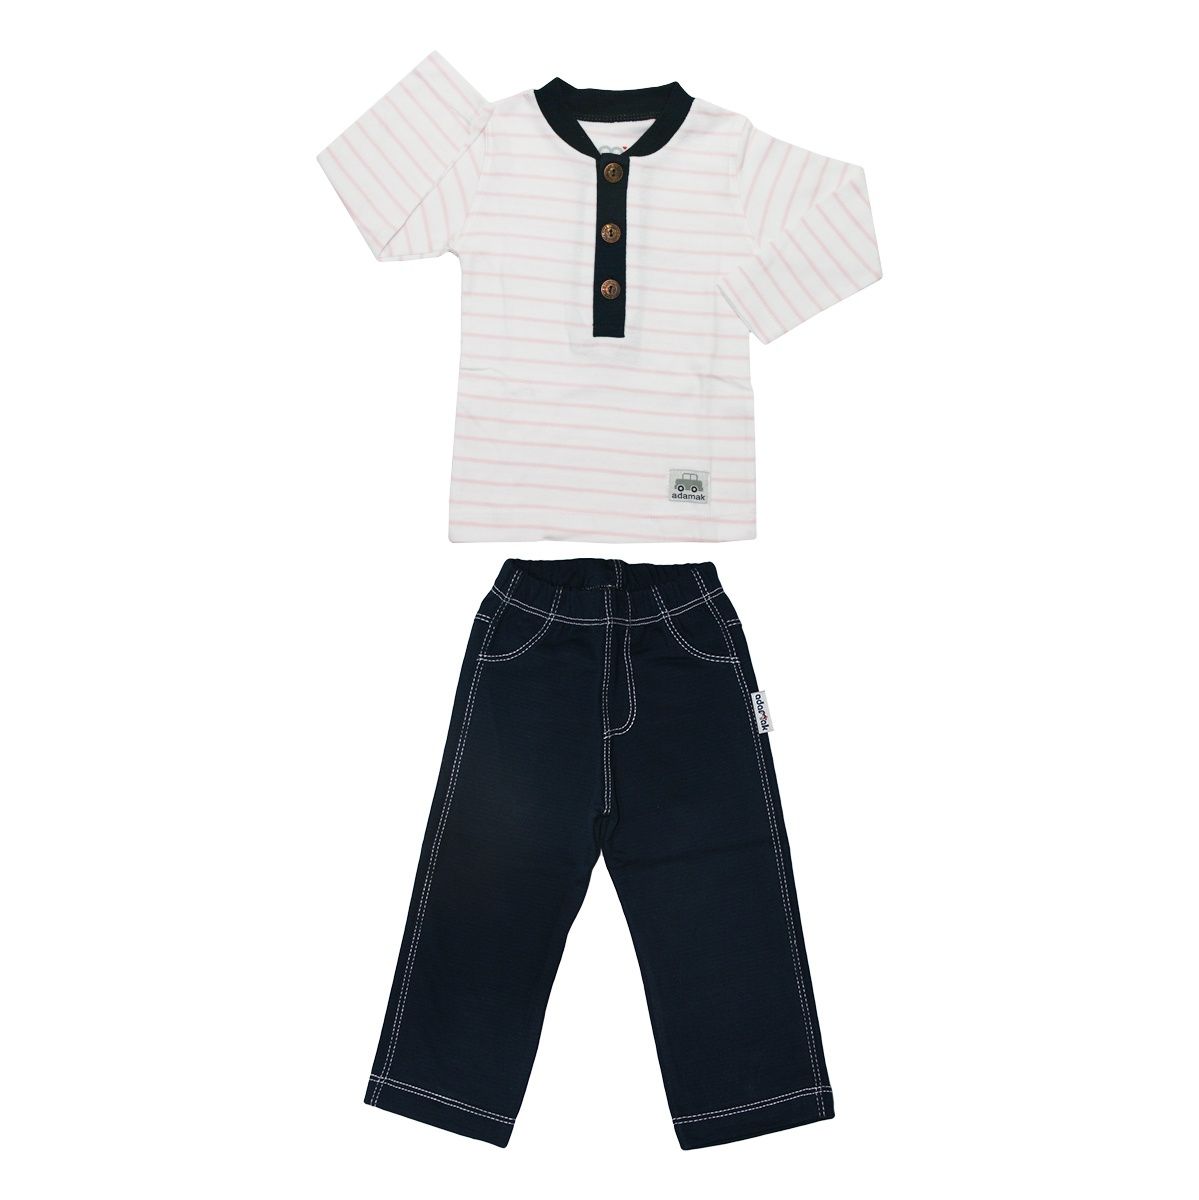 ست تی شرت و شلوار نوزادی پسرانه آدمک مدل 1155011 کد 13 -  - 1